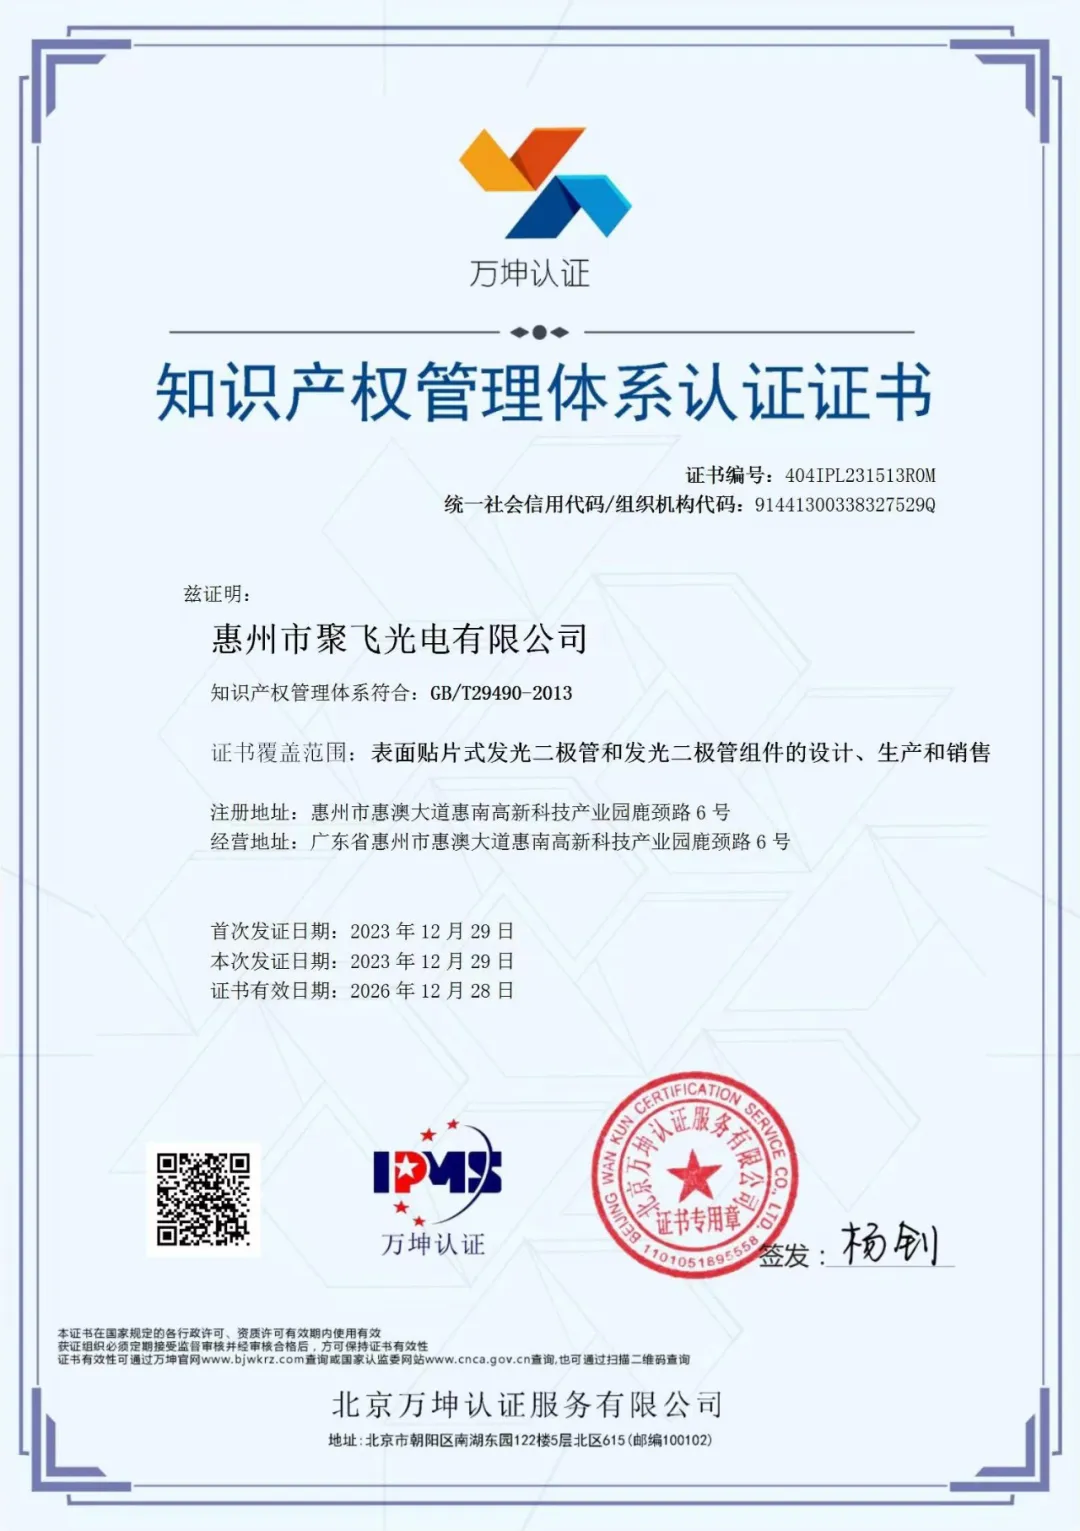 惠州半岛官网通过企业知识产权管理规范认证